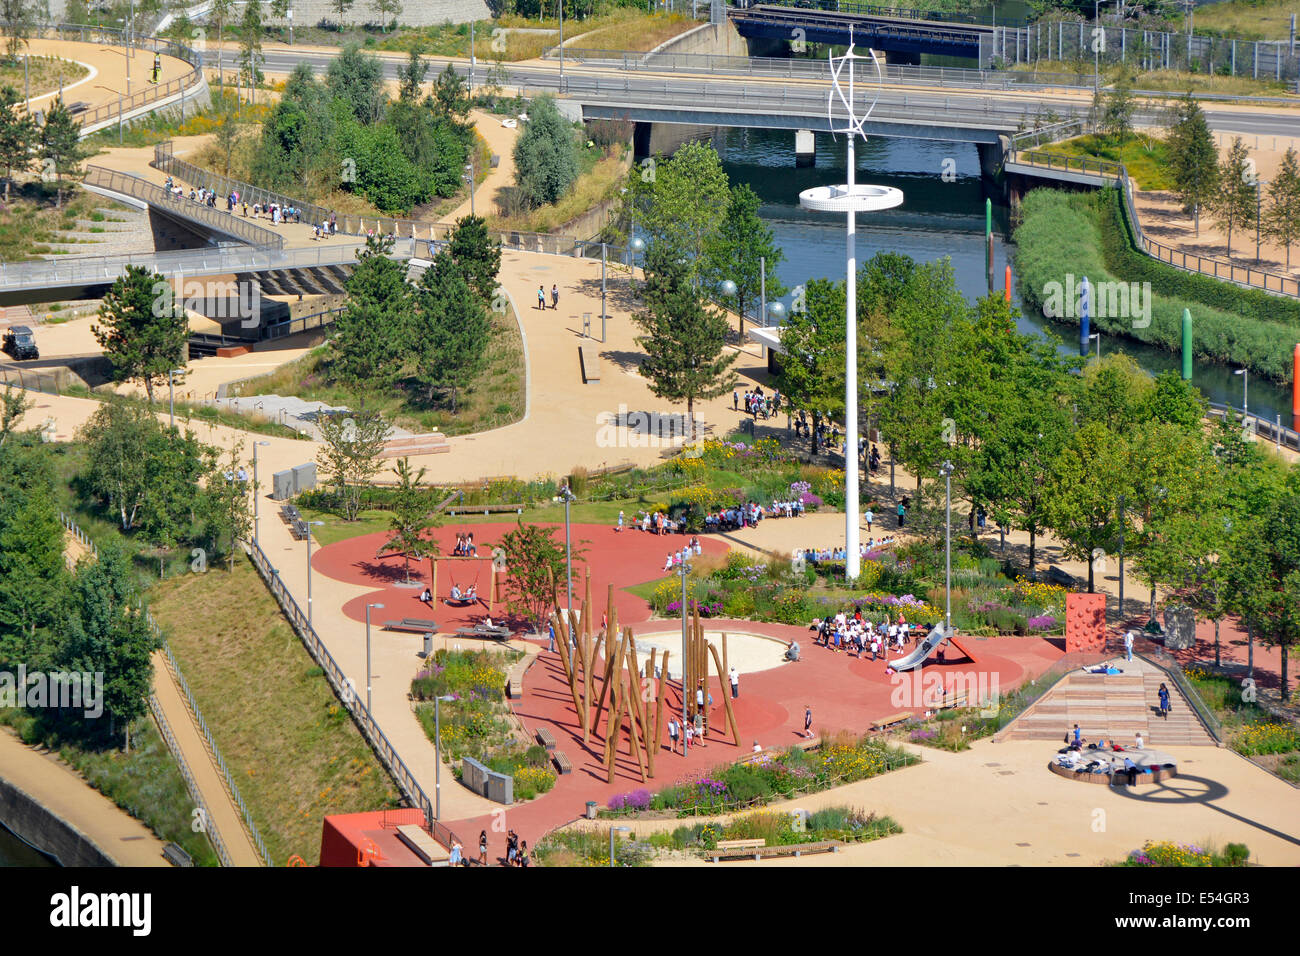 Vue aérienne sur le terrain de jeu des enfants dans le parc olympique Queen Elizabeth re paysagant après les Jeux Olympiques de Londres 2012 Stratford Angleterre Banque D'Images